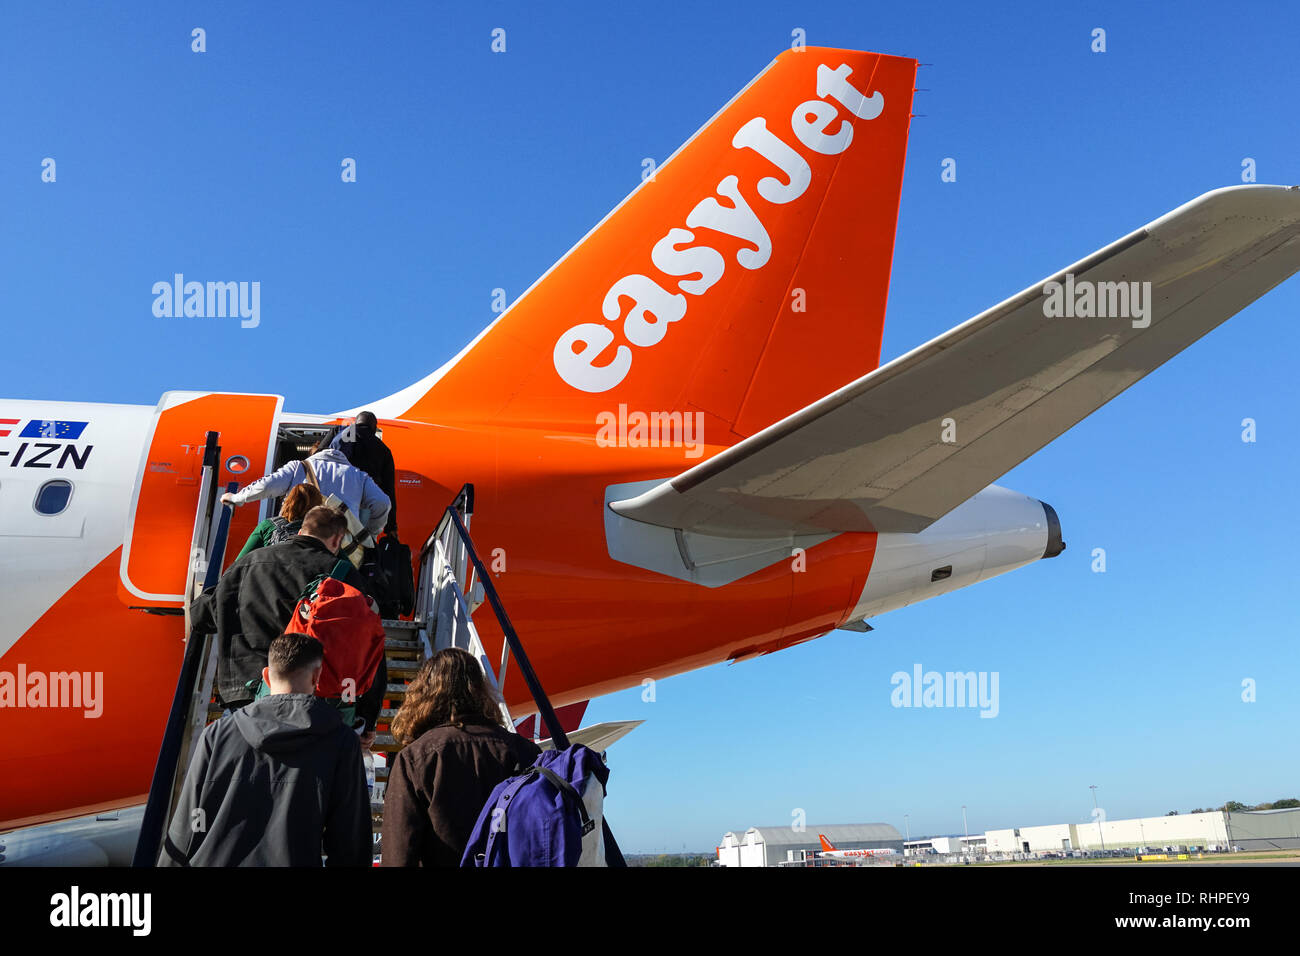 Die Fluggäste EasyJet Flugzeug am Flughafen Gatwick, England Vereinigtes Königreich Großbritannien Stockfoto